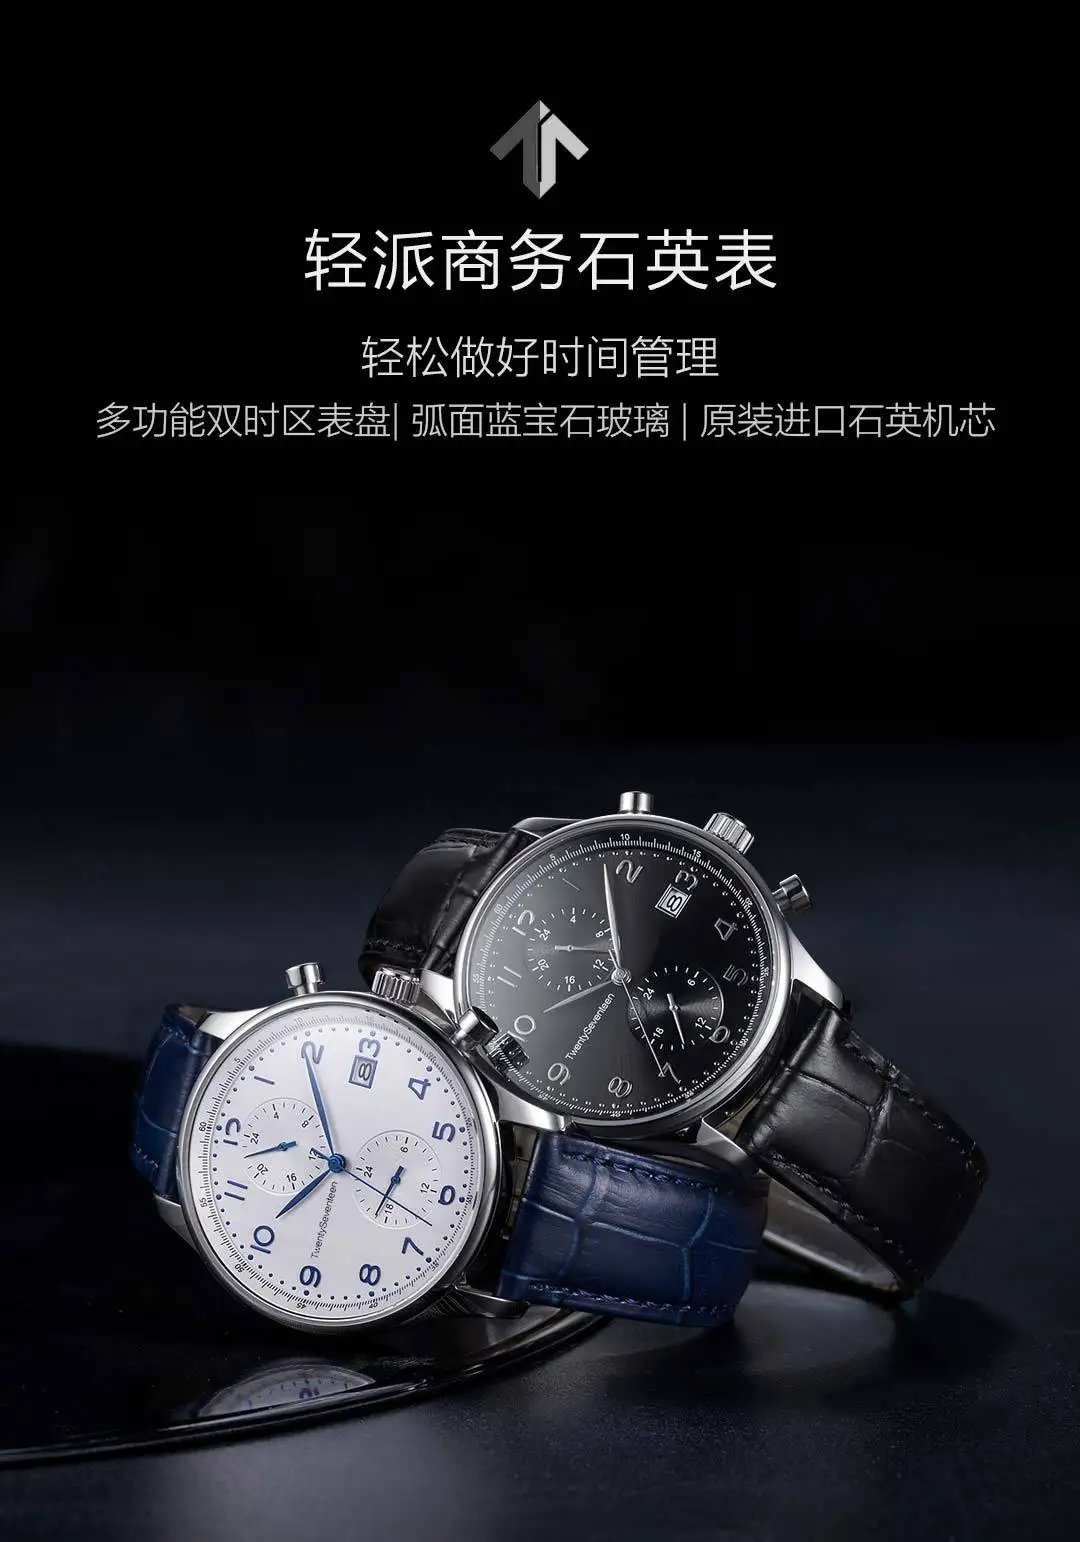 Xiaomi Youpin TwentySeventeen светильник Бизнес Кварцевые часы Высокое качество элегантность для мужчин 2 цвета